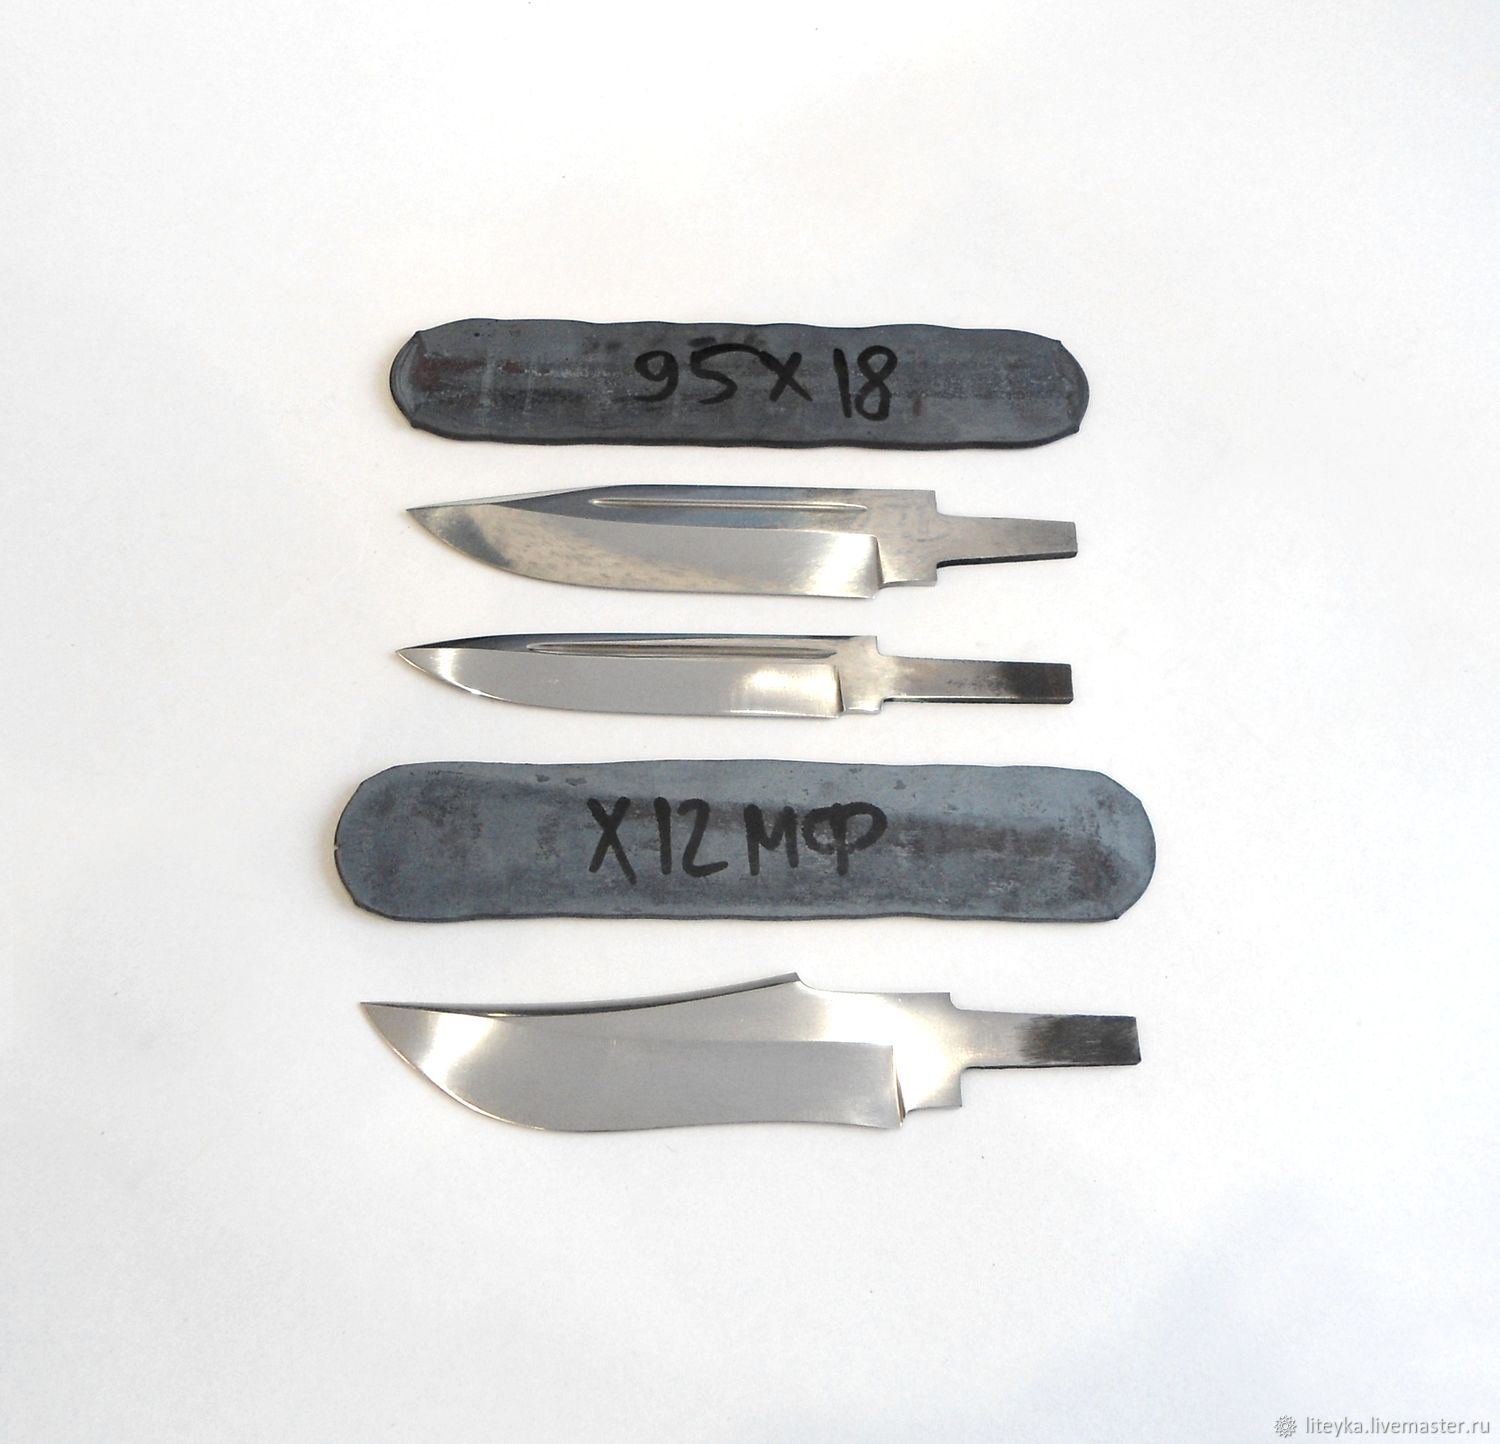 Стали для изготовления ножей. Поковки для ножа х12 MF. 95х18 сталь поковка клинок каленая. Поковки для ножа 95х18 х12мф. Заготовки сталь х12мф ножи.